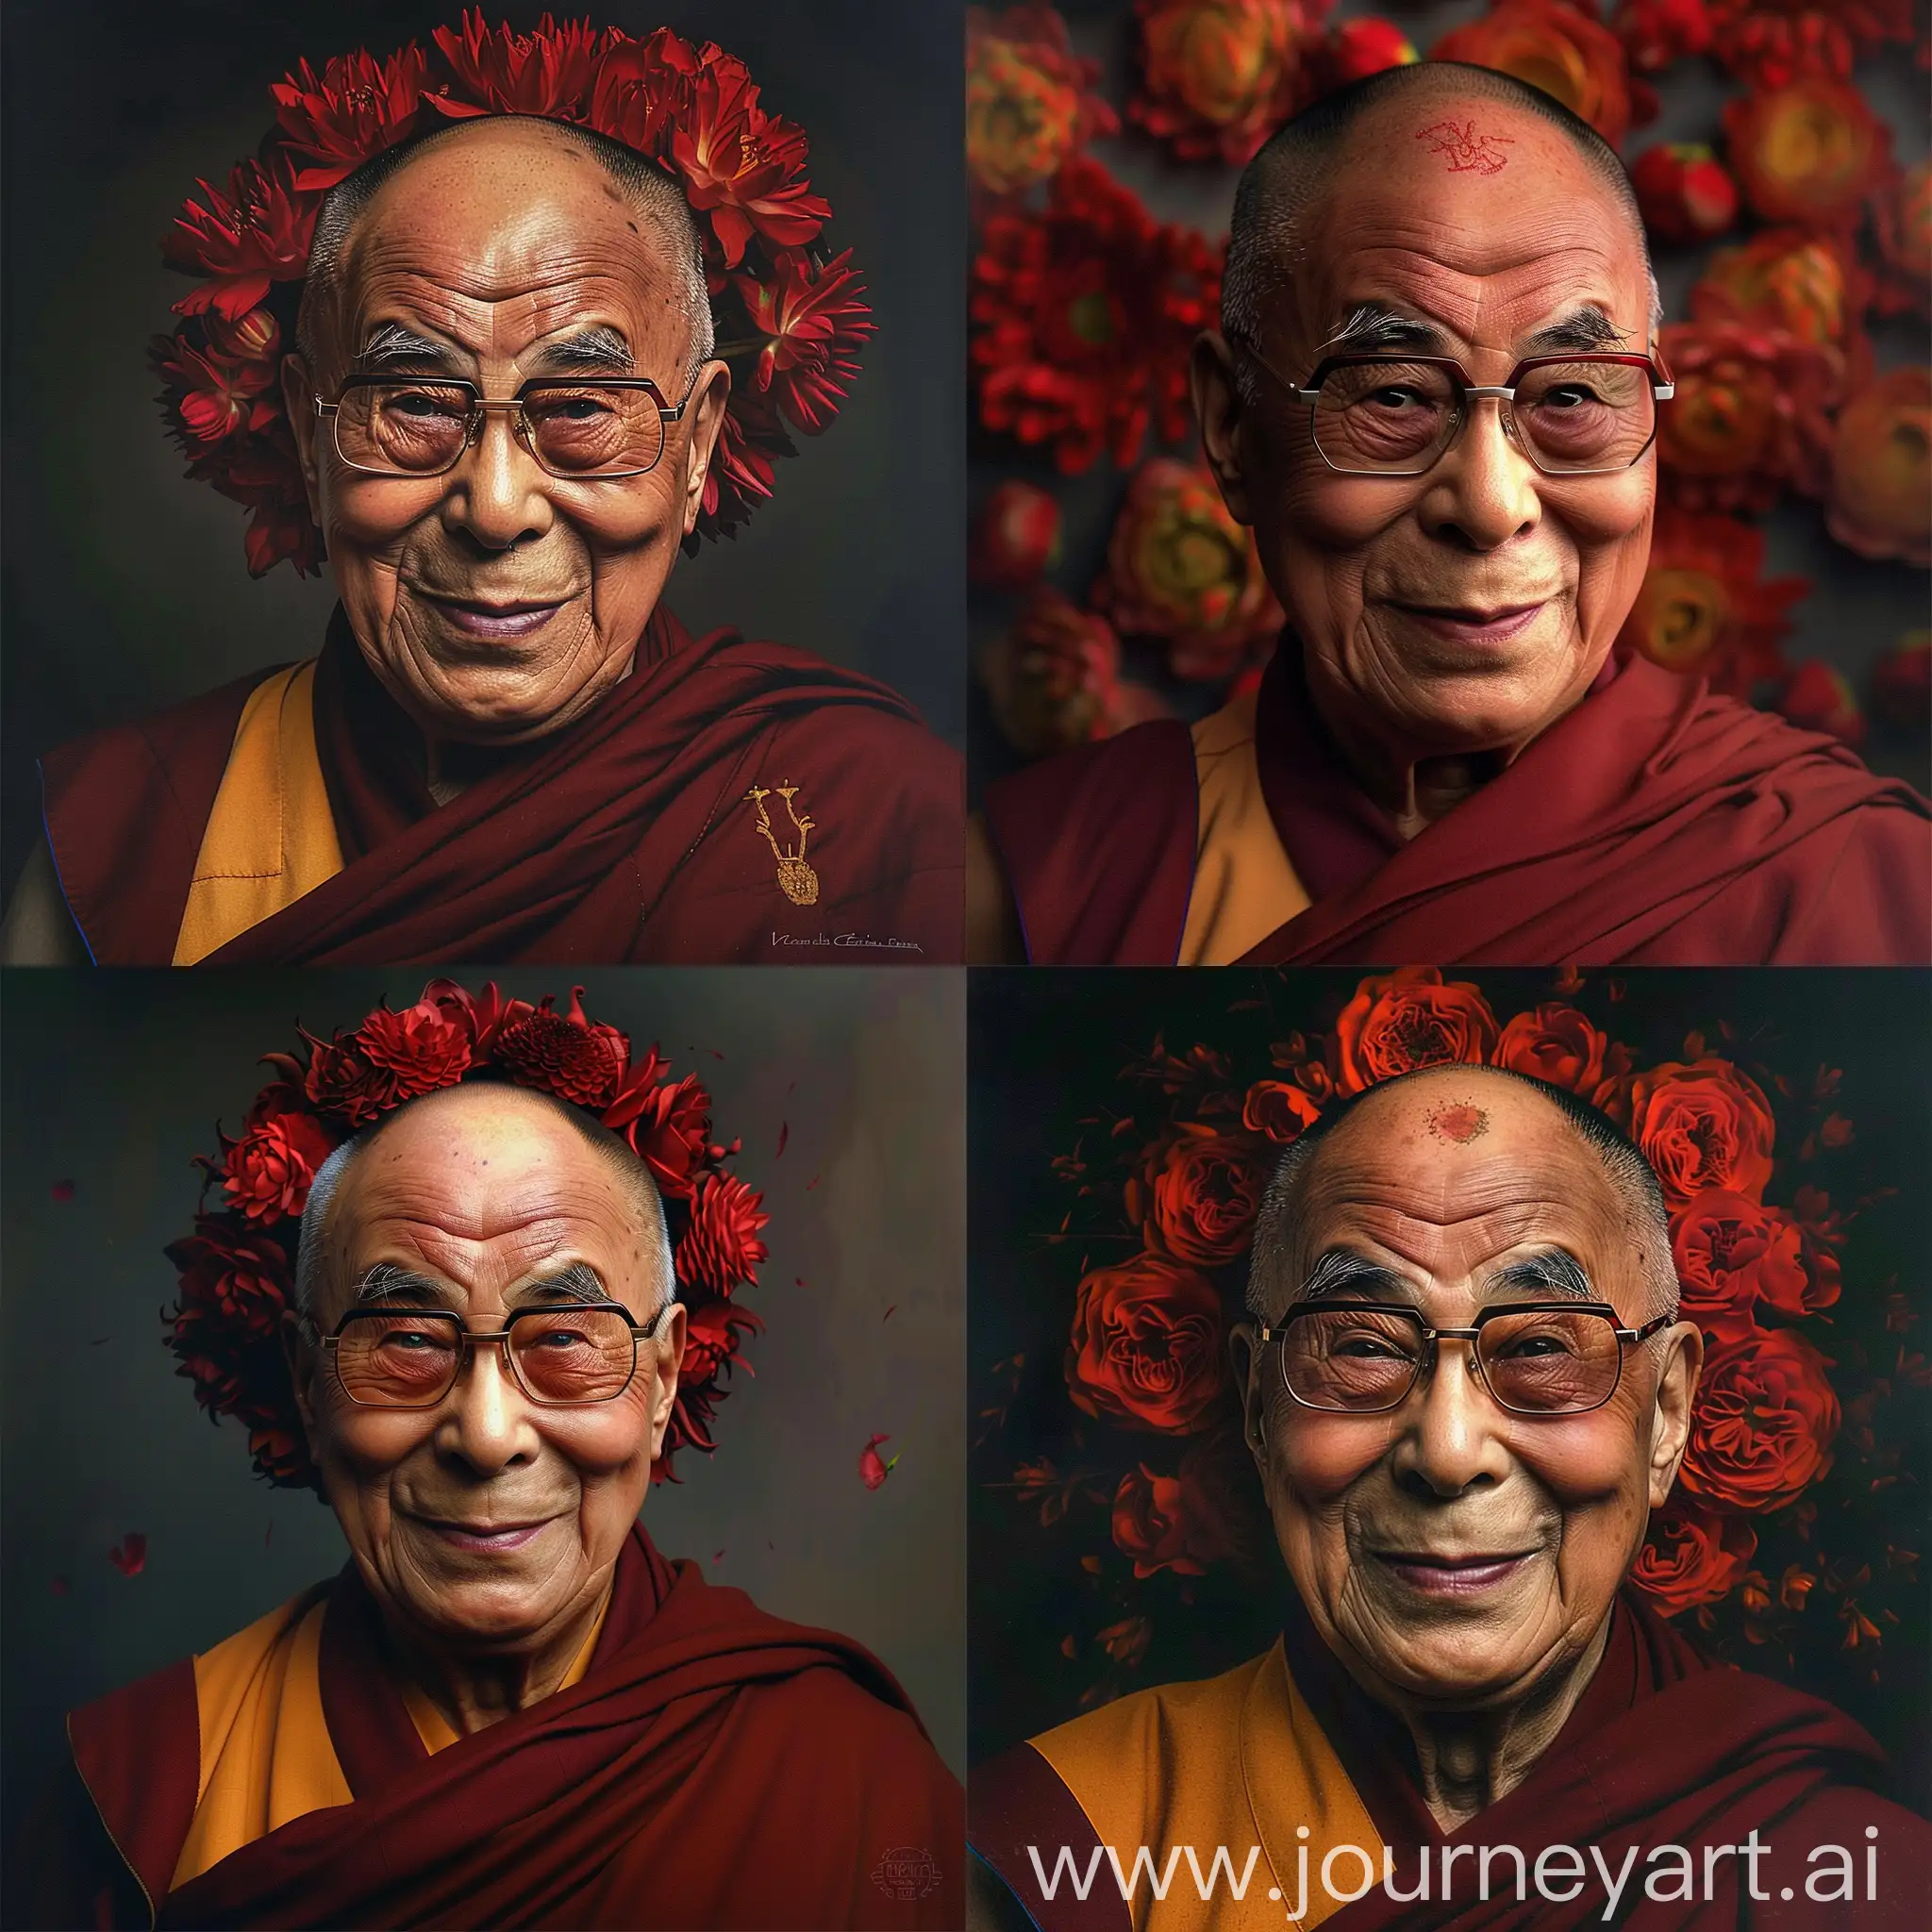 Dalai-Lama-Wearing-Red-Flower-Wreath-in-Hyper-Realistic-Style